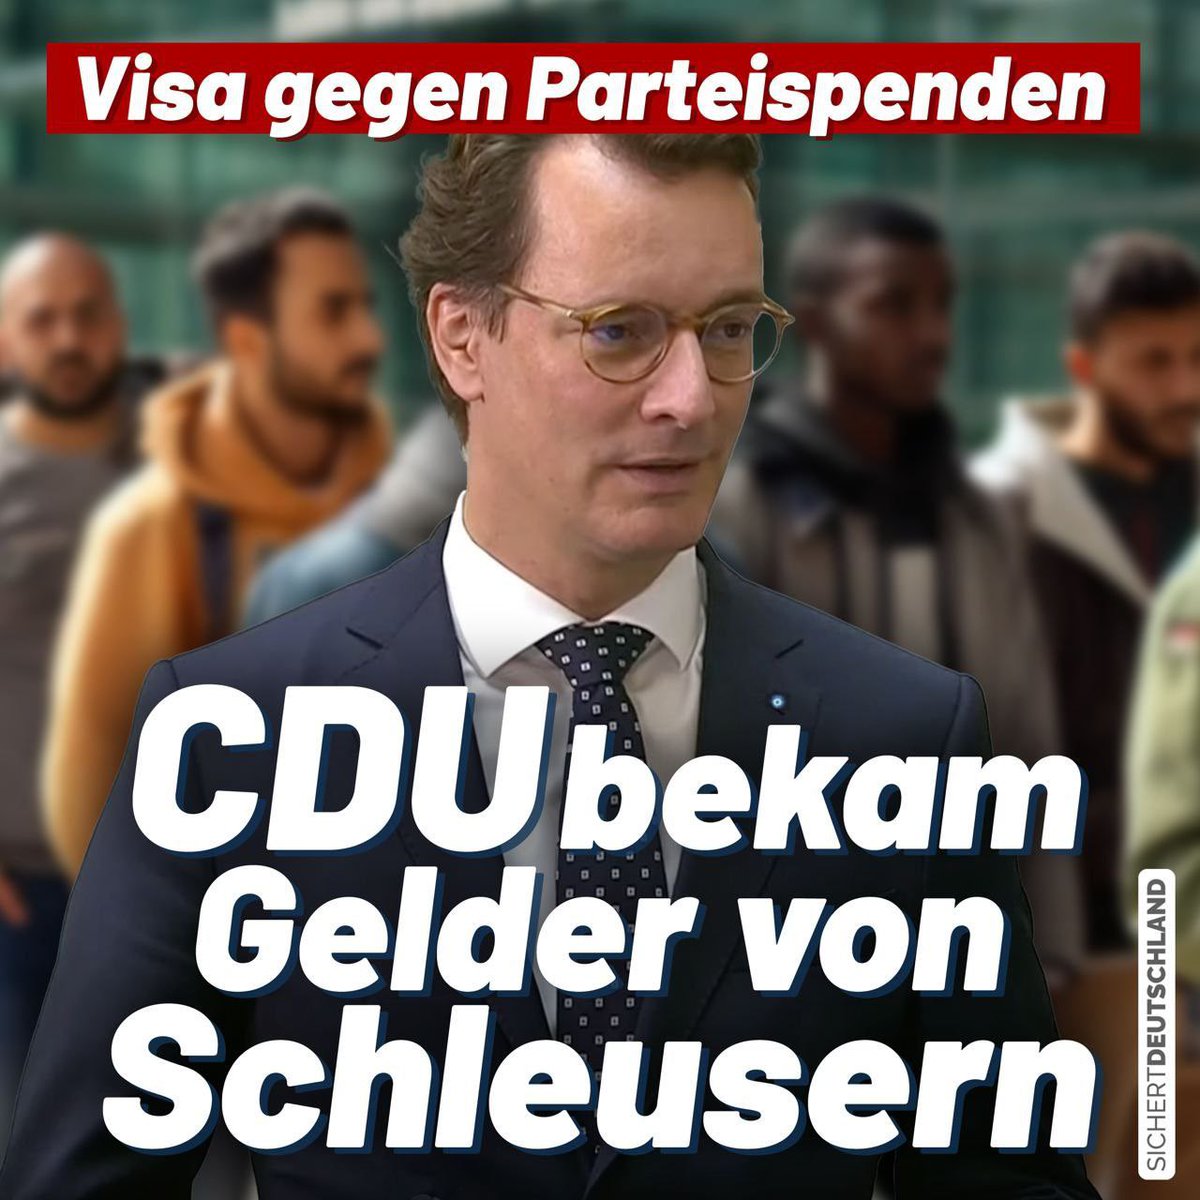 Ein brutaler Skandal erschüttert aktuell die CDU in NRW, der die migrationsfreundlichen Entscheidungen der letzten Jahre in einem neuen Licht erscheinen lässt. 

So hat die Partei Spenden mindestens 52.000 Euro von einer im April bei einer Großrazzia aufgeflogenen Schleuserbande…